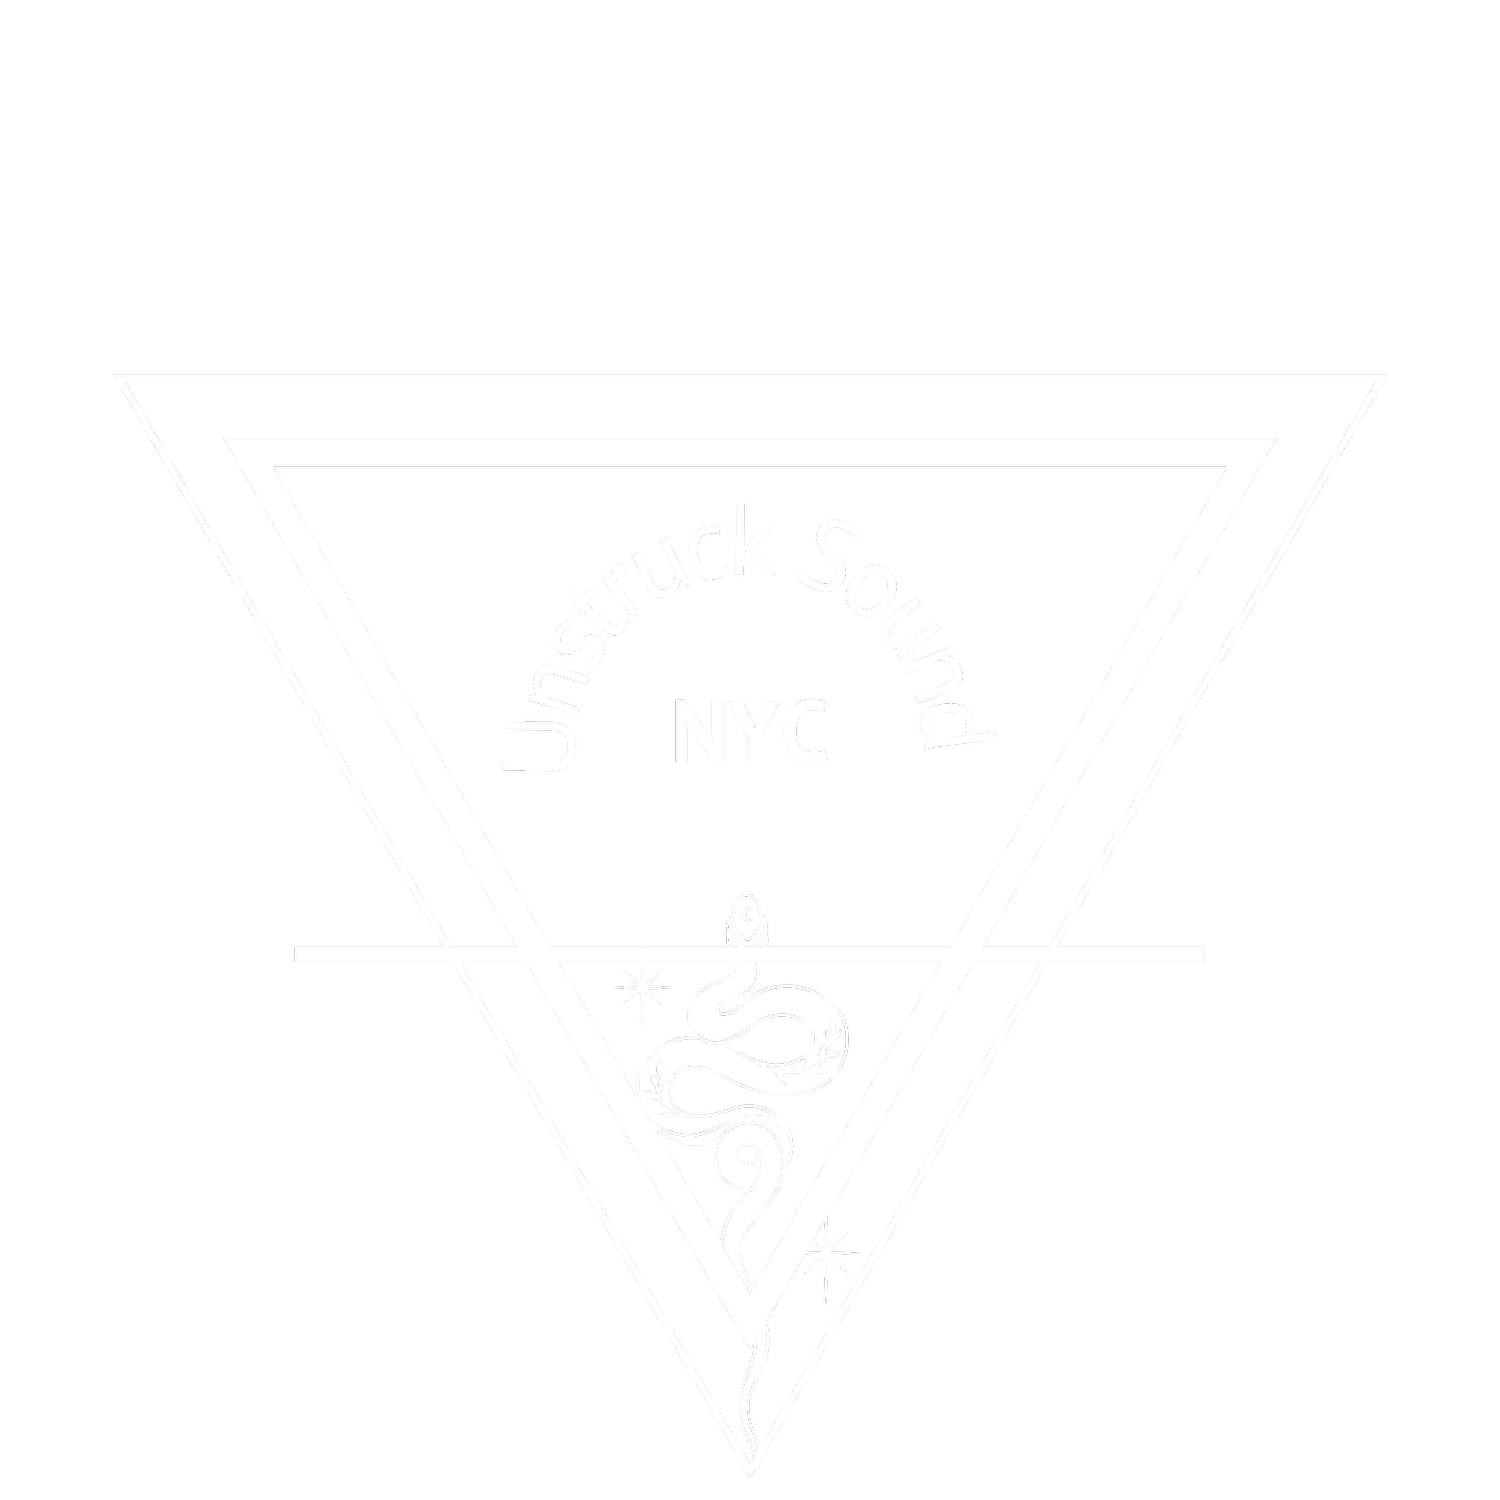 Unstruck Sound NYC